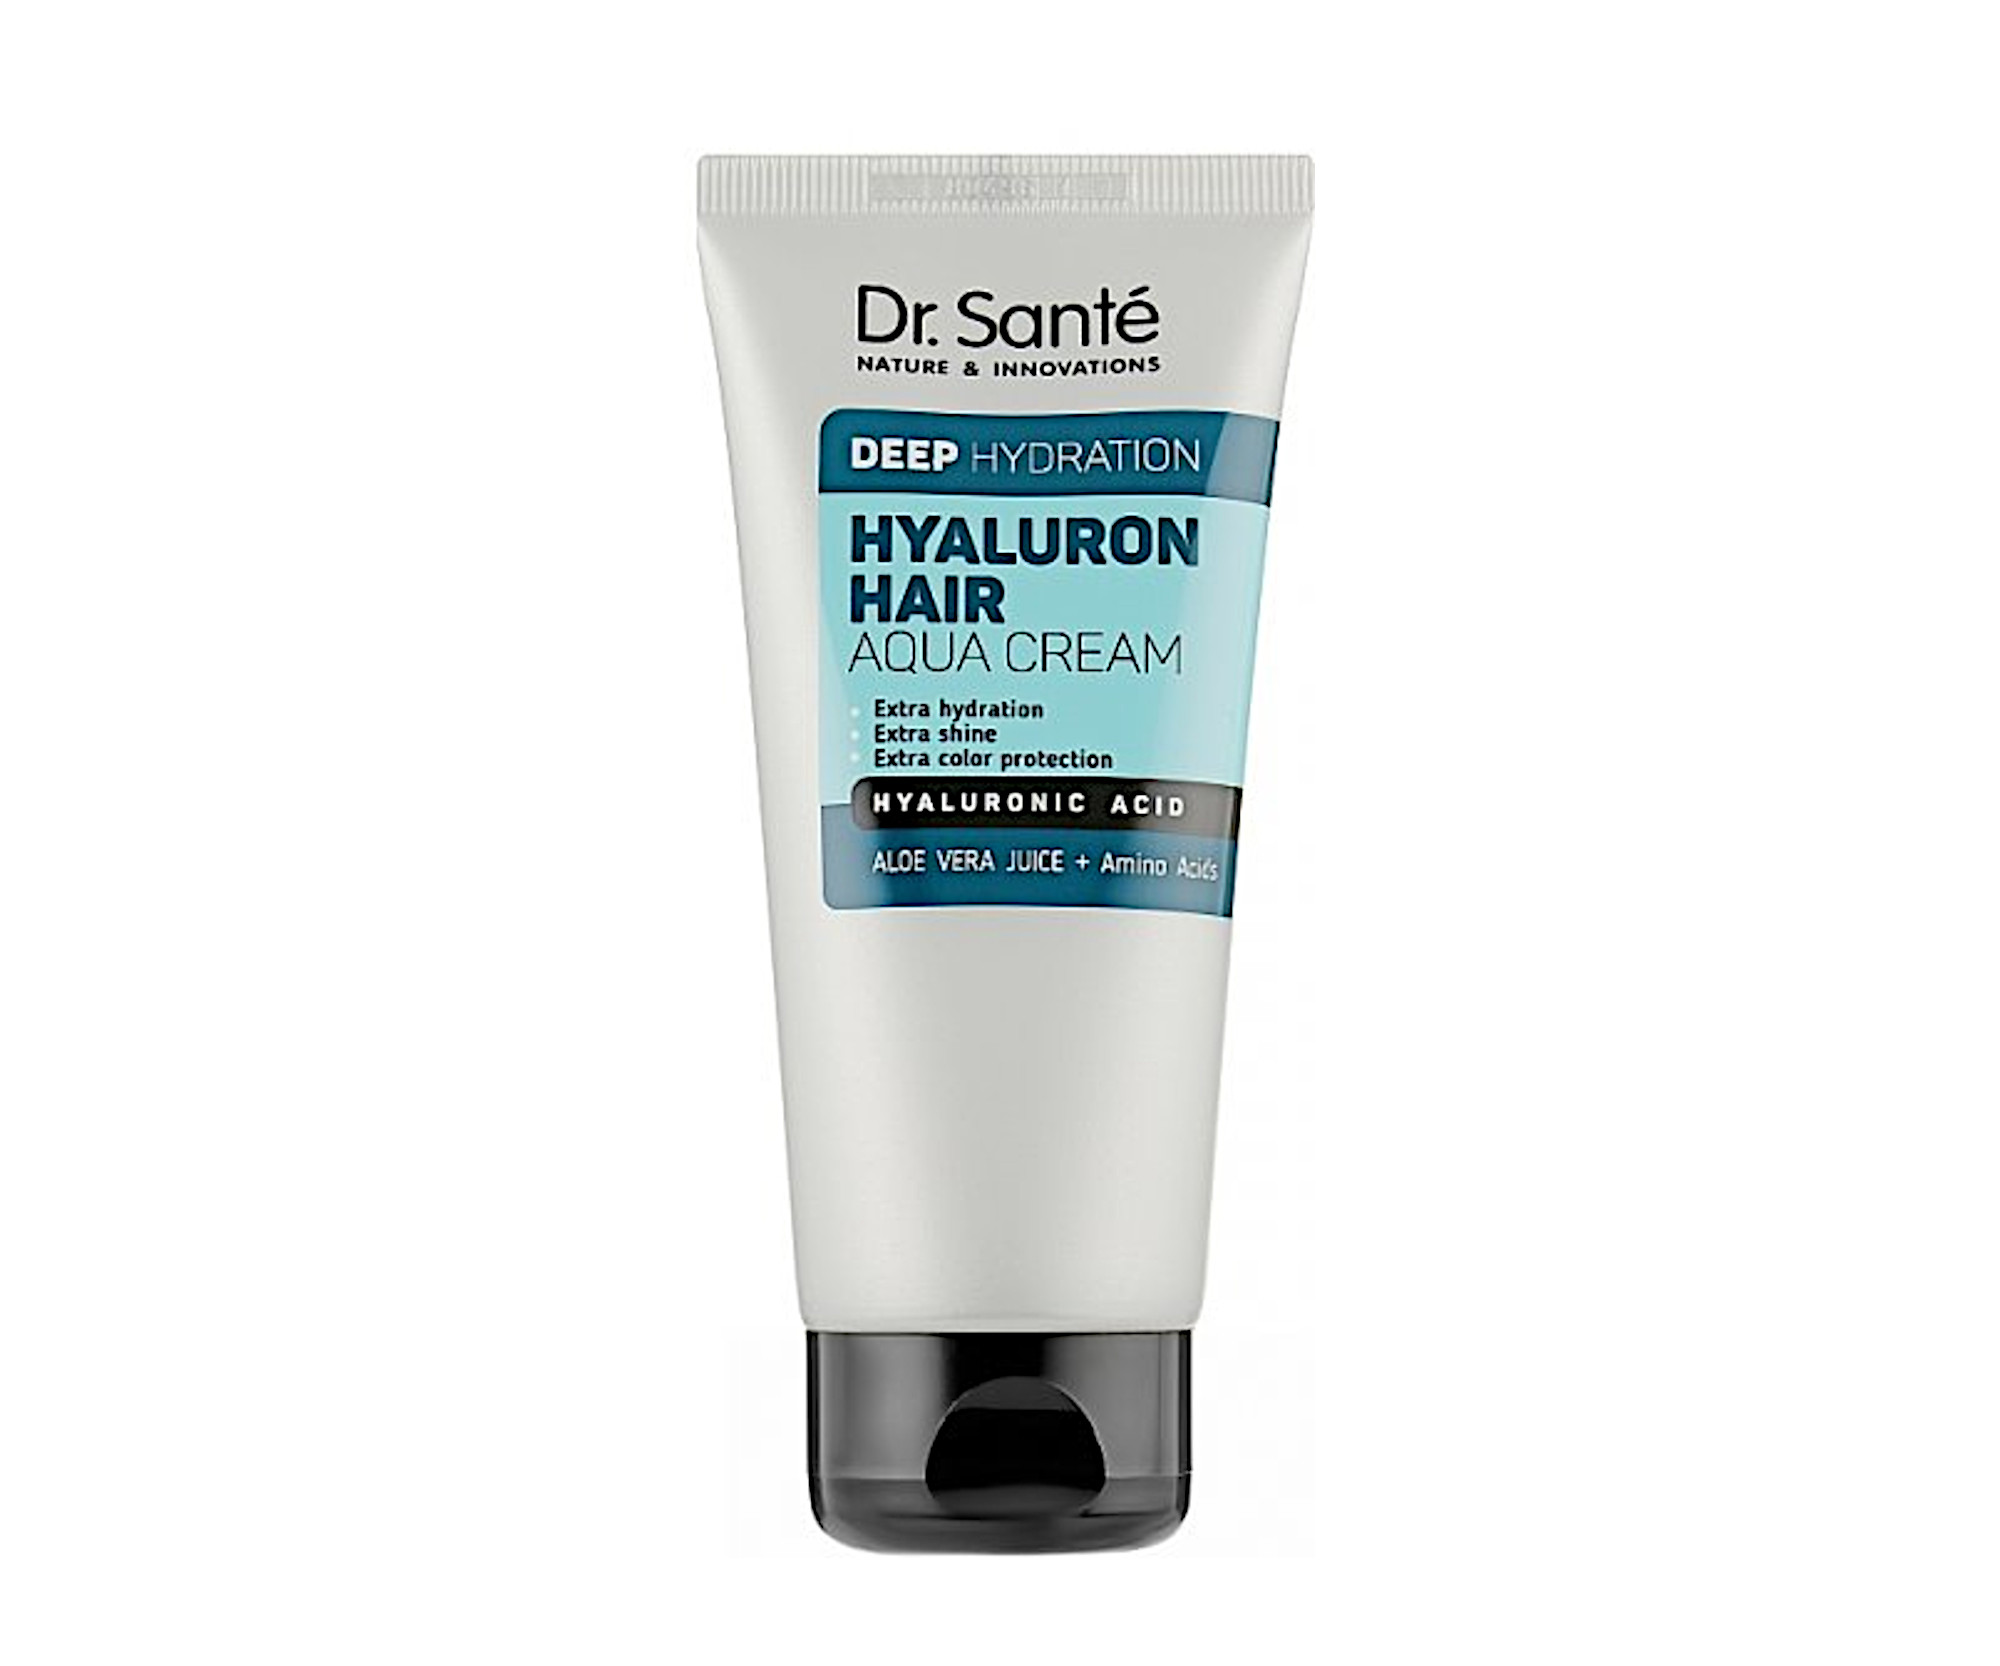 Hloubkově hydratační krém na vlasy Dr. Santé Hyaluron Hair - 100 ml + dárek zdarma